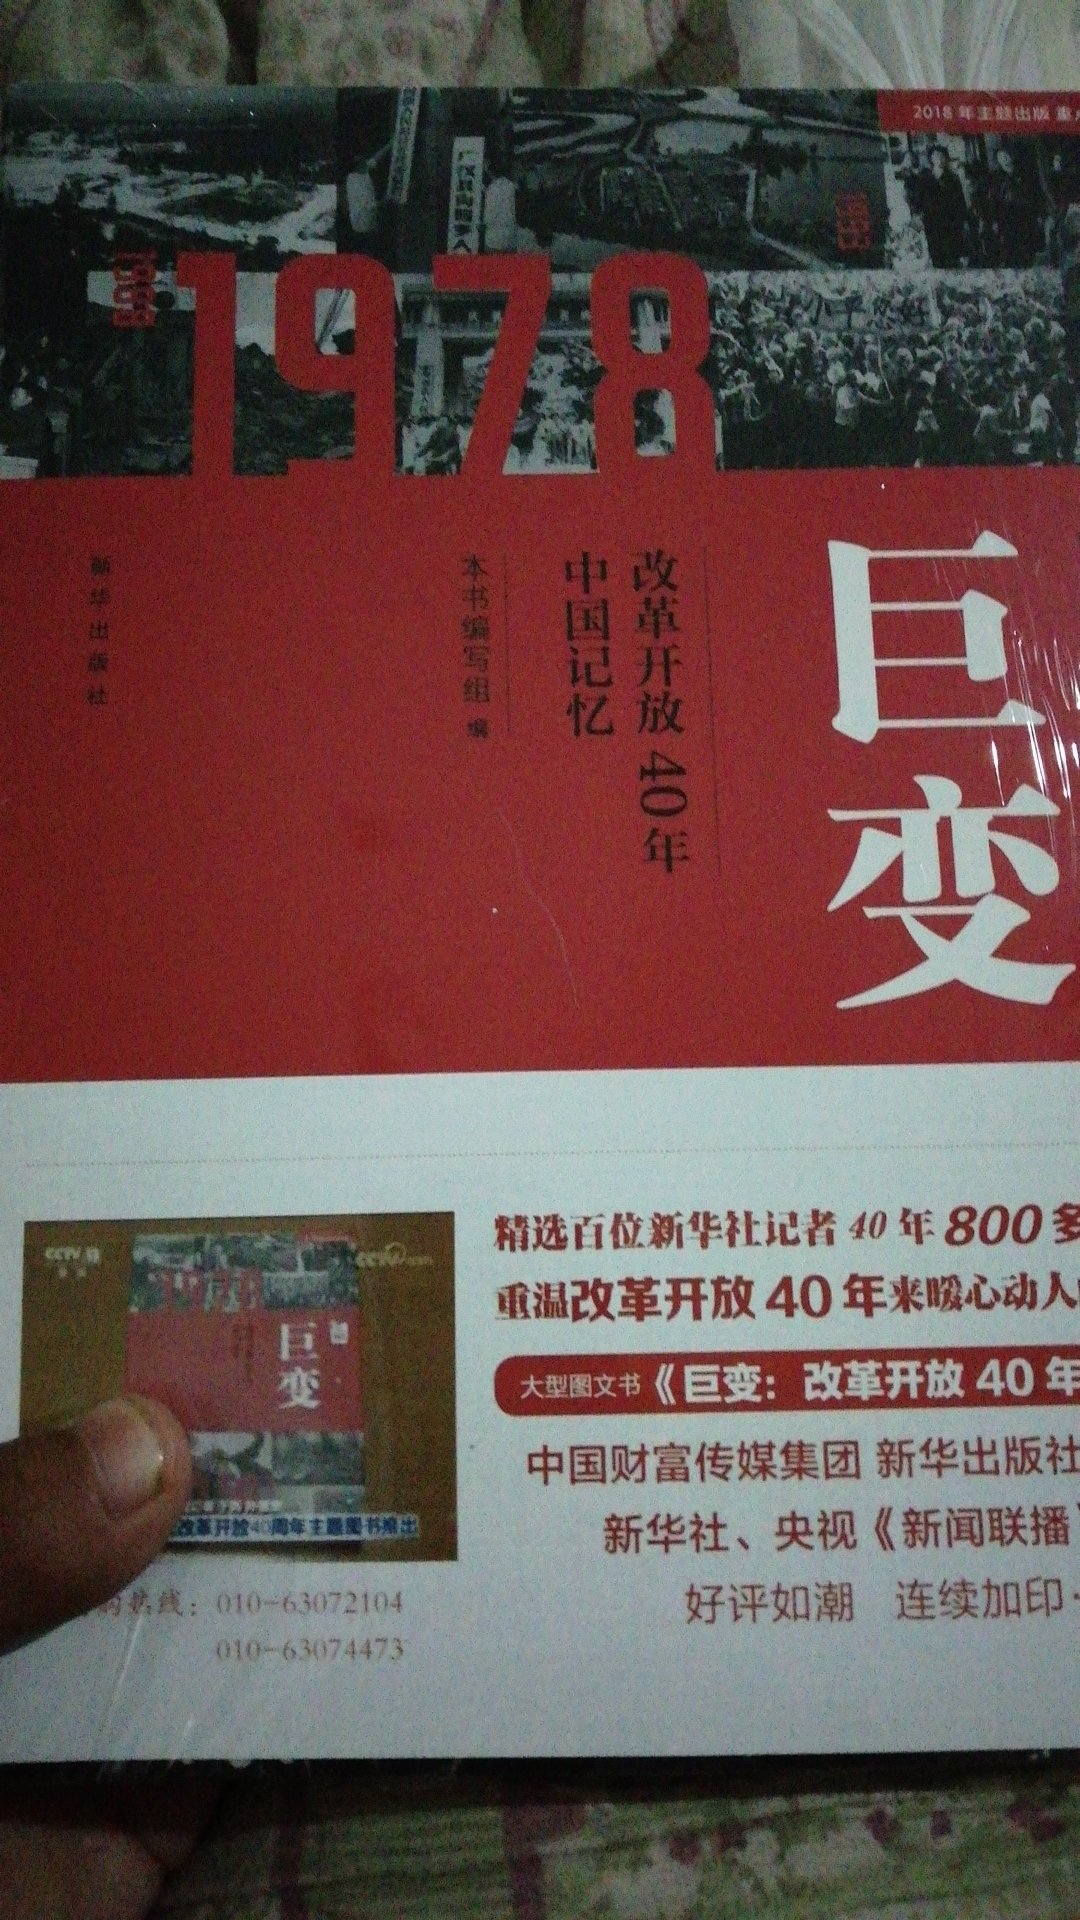 书很重，照片特别有质感，真可谓是物美价廉，值得一买，看中国古往今来之变化。(?????)